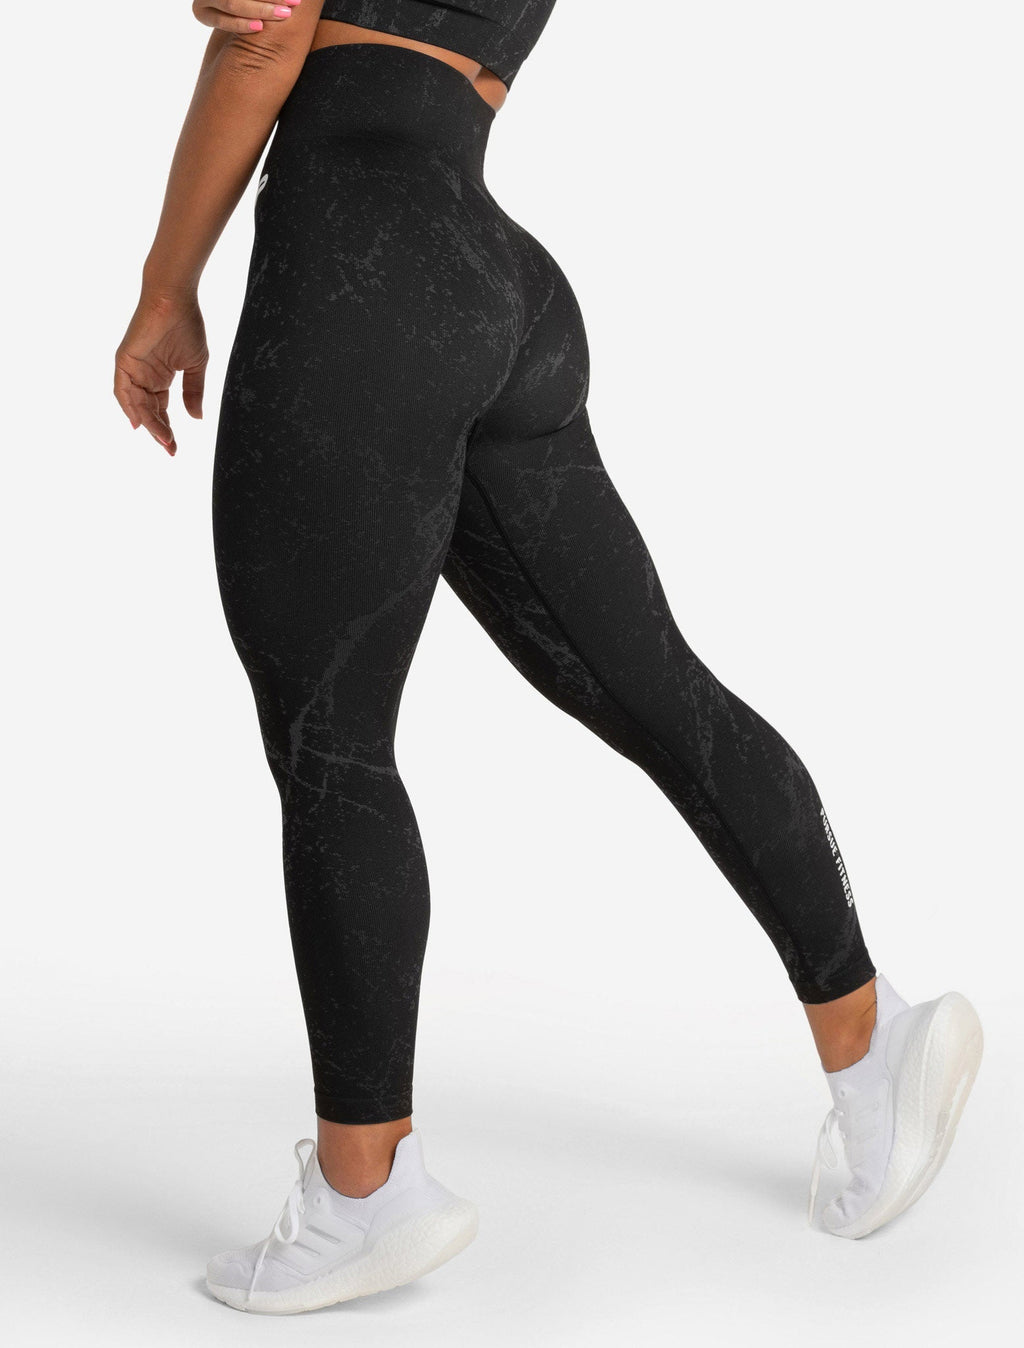 Express Black Cheetah Print Leggings Size M. Women’s Stretch Pants Cotton /  Span